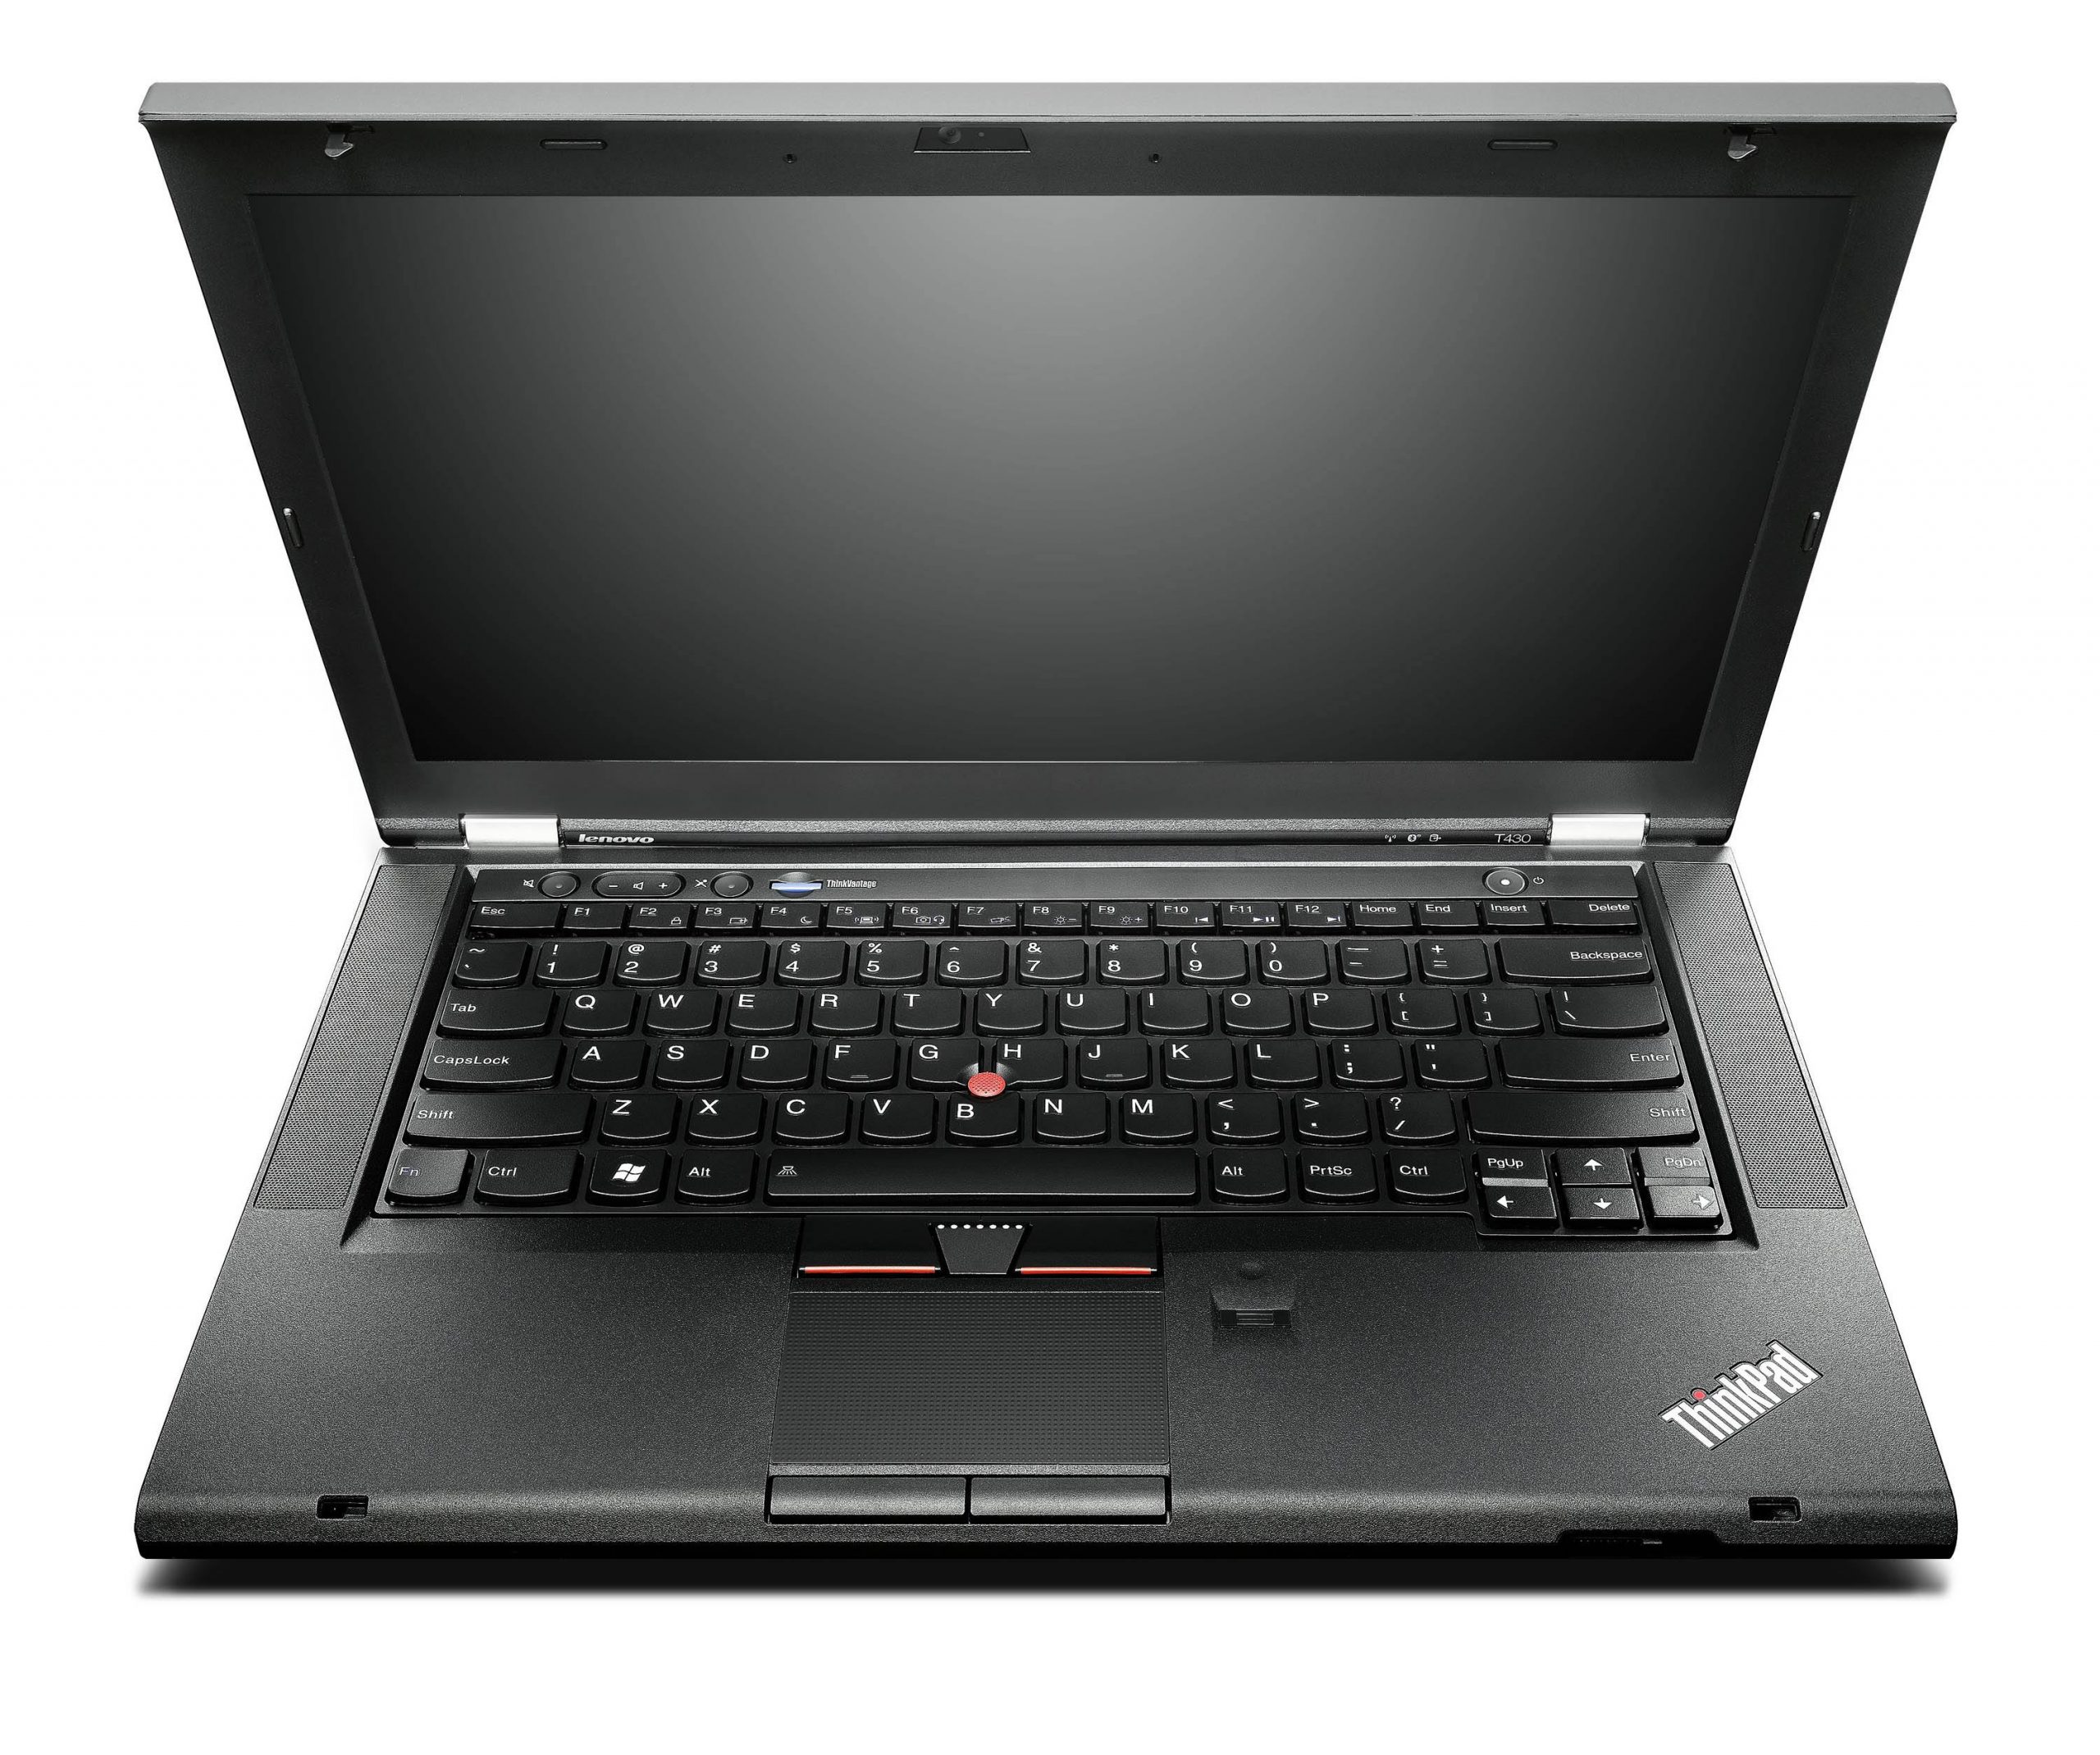 Laptop Lenovo ThinkPad T430 i5-3210M Cũ Giá Rẻ  vnđ